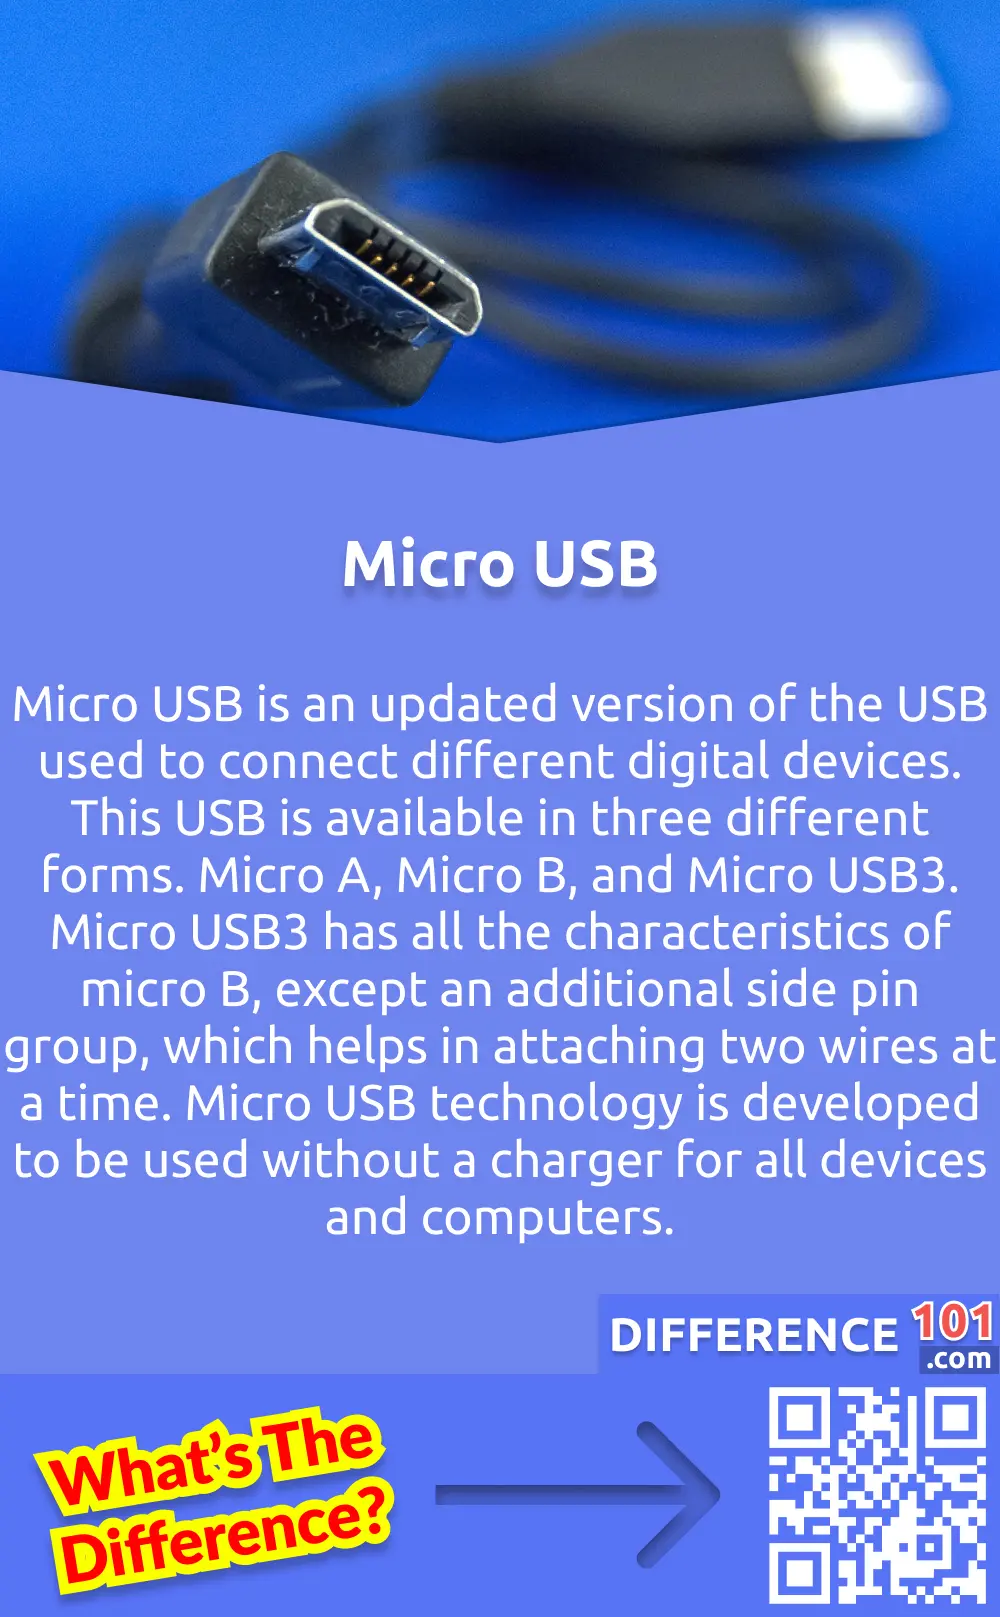 Pentru ce sunt utilizate micros?